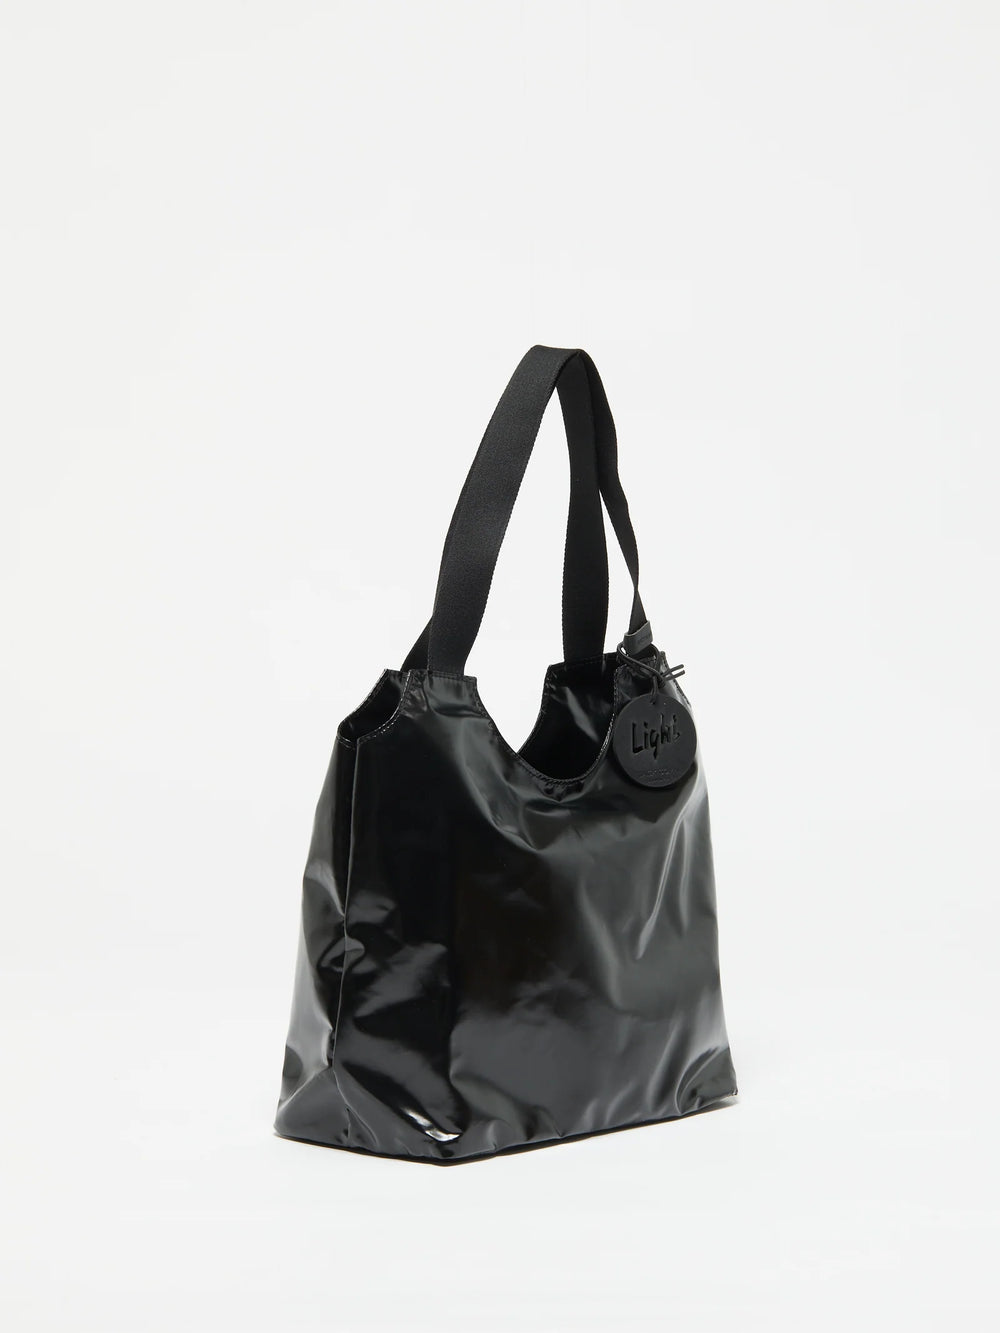 Jack Gomme Tilly Light Shopping Bag - Noir